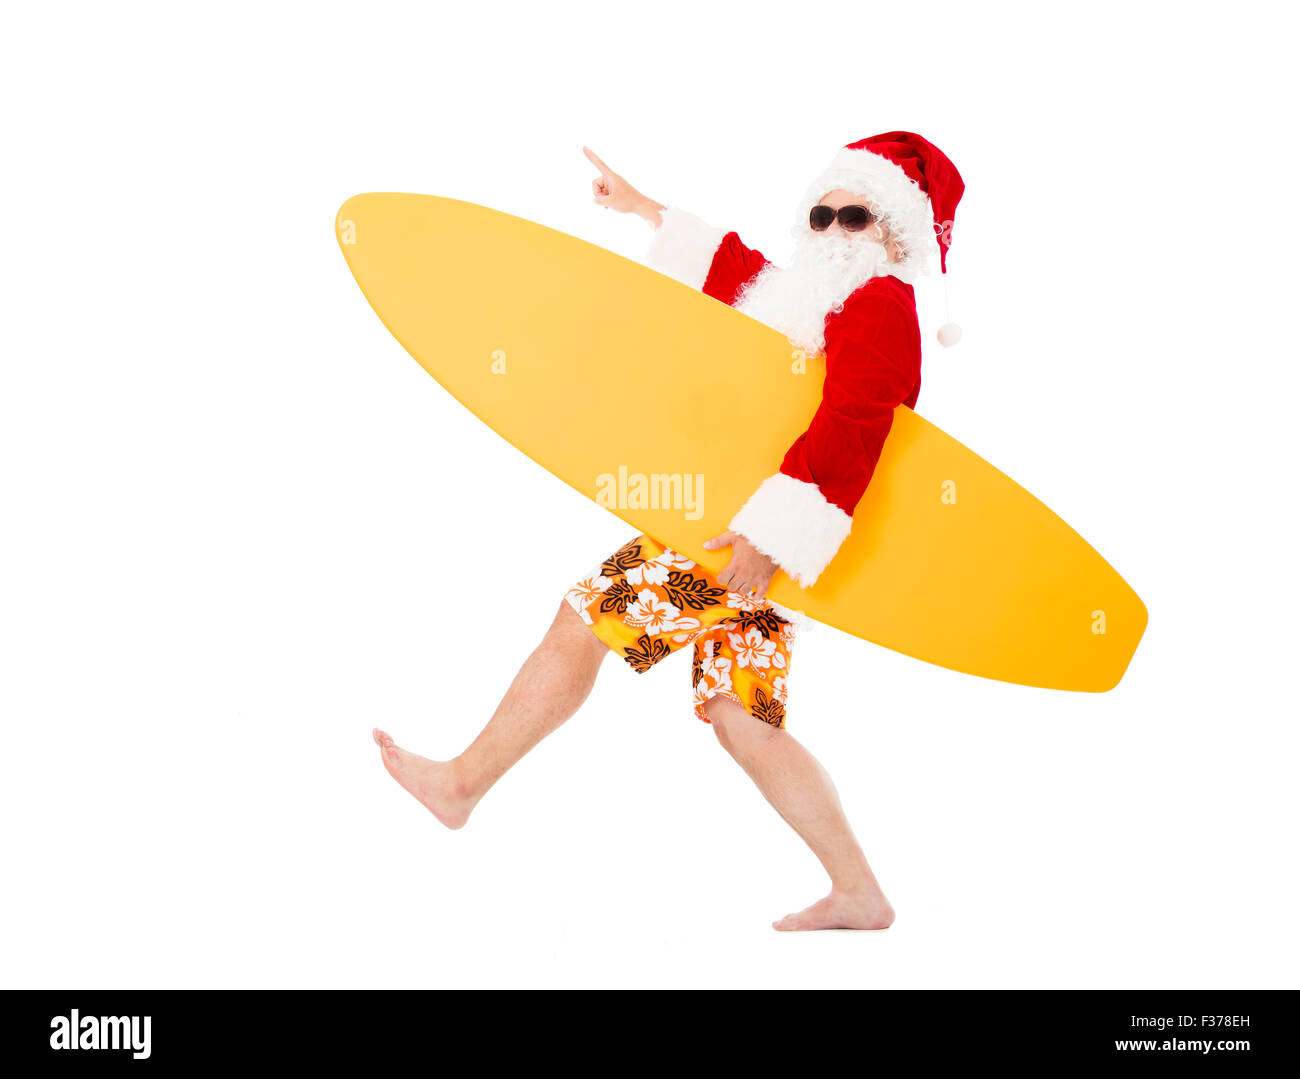 Happy Santa Claus holding planche de surf avec des gestes de pointage Banque D'Images